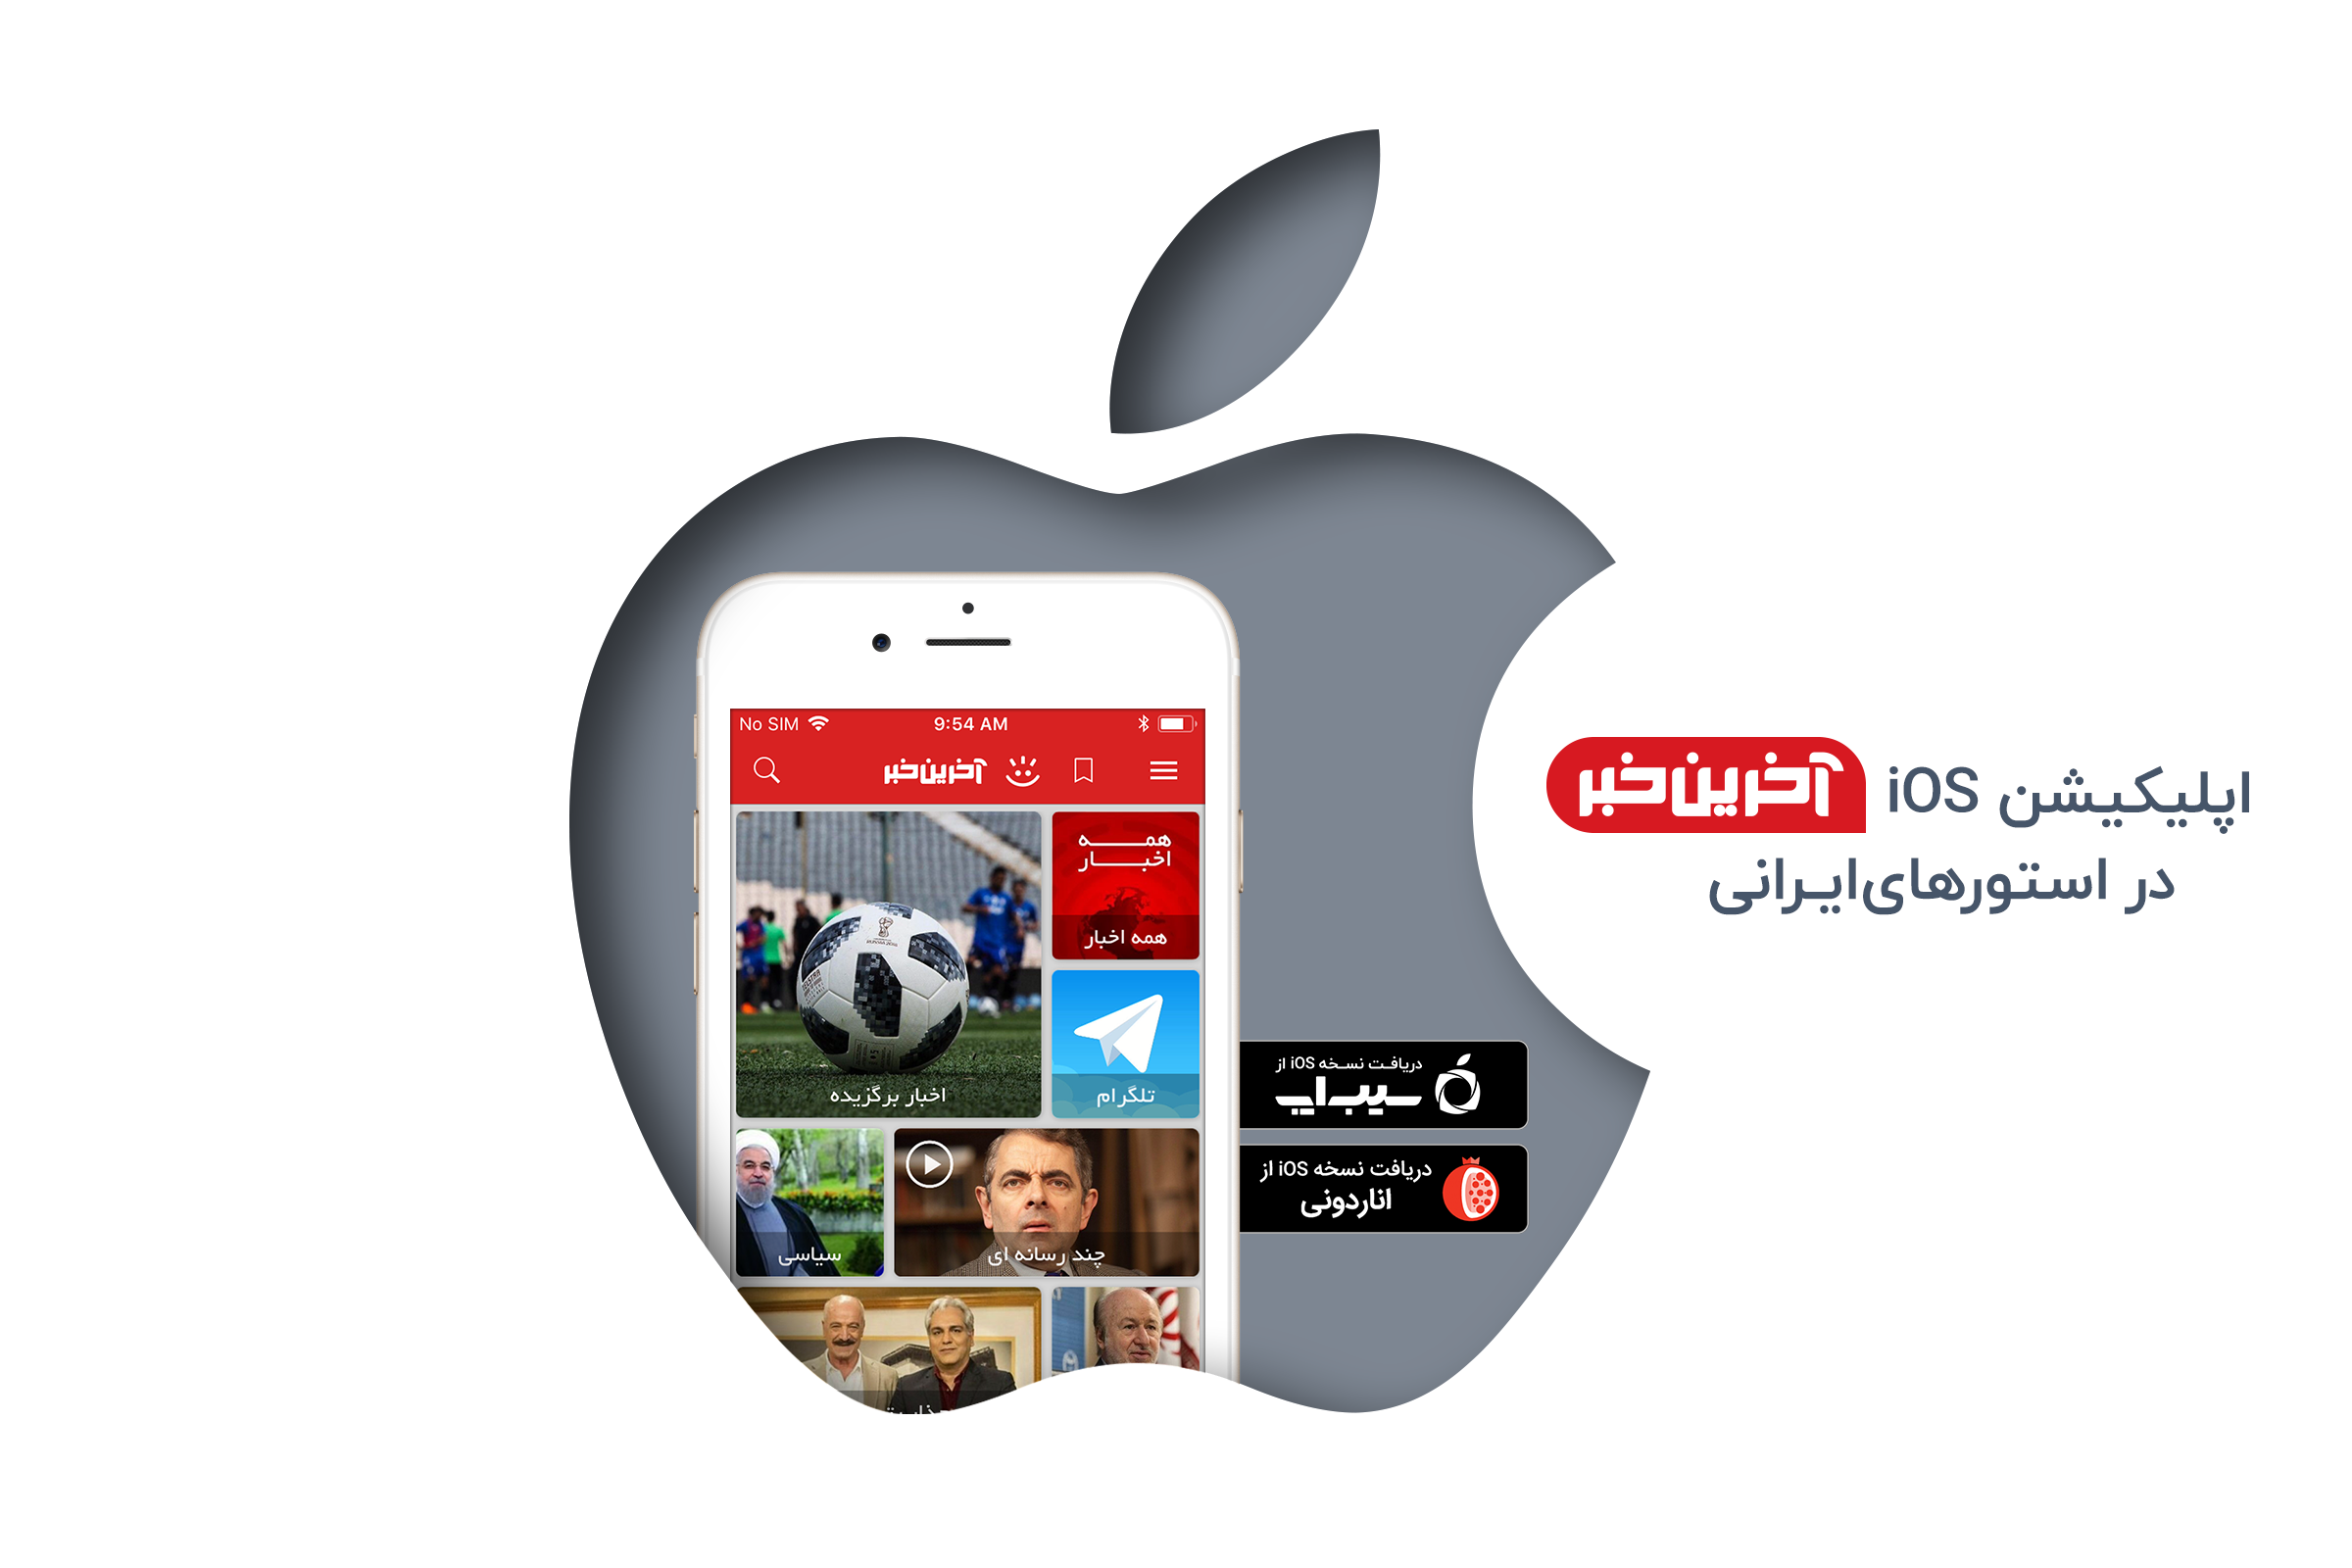 اپلیکیشن iOS آخرین خبر در استورهای ایرانی